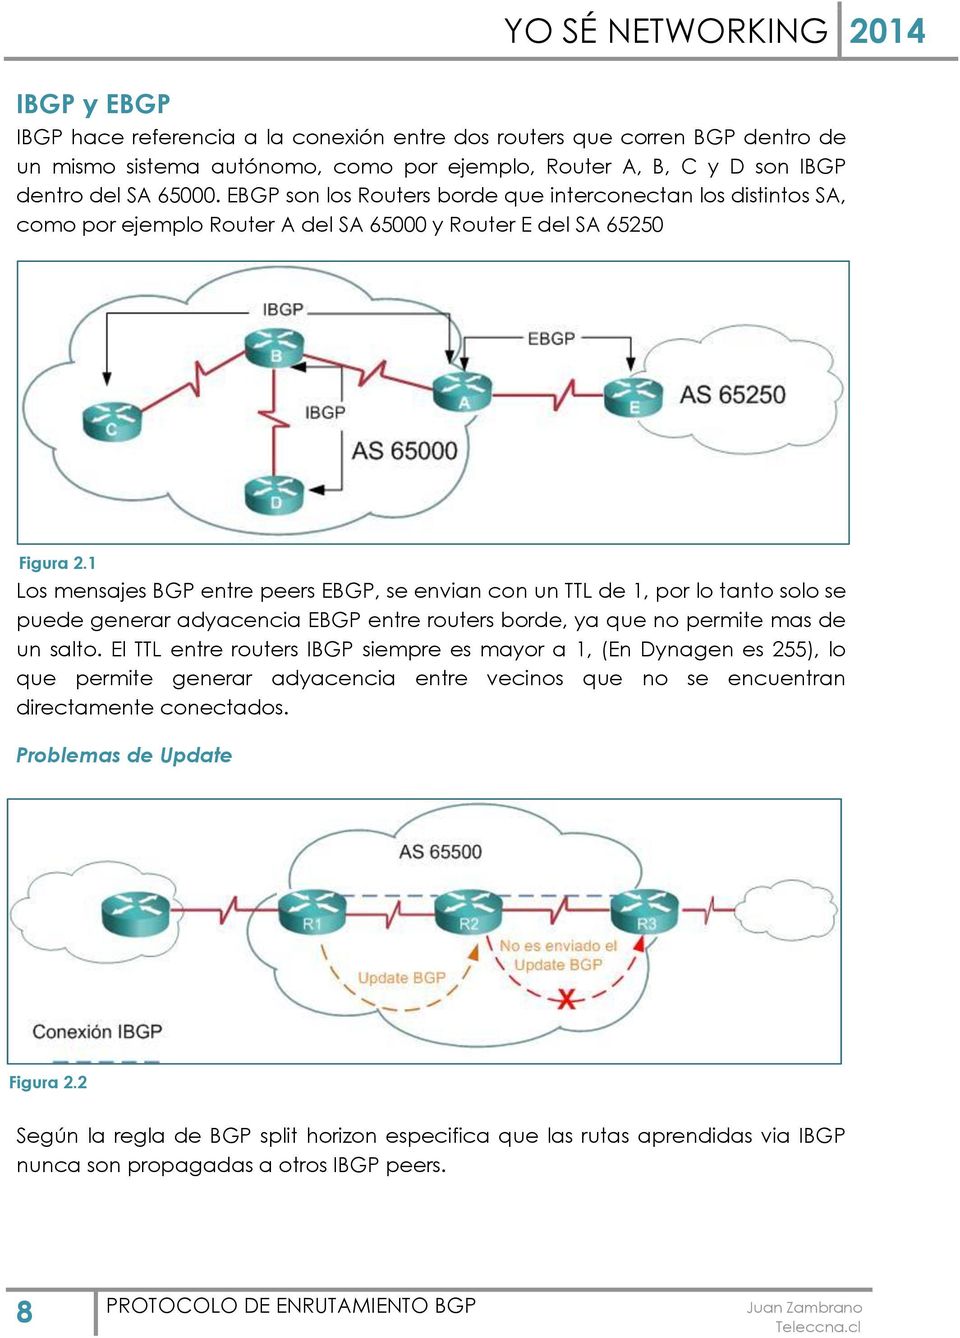 1 Los mensajes BGP entre peers EBGP, se envian con un TTL de 1, por lo tanto solo se puede generar adyacencia EBGP entre routers borde, ya que no permite mas de un salto.